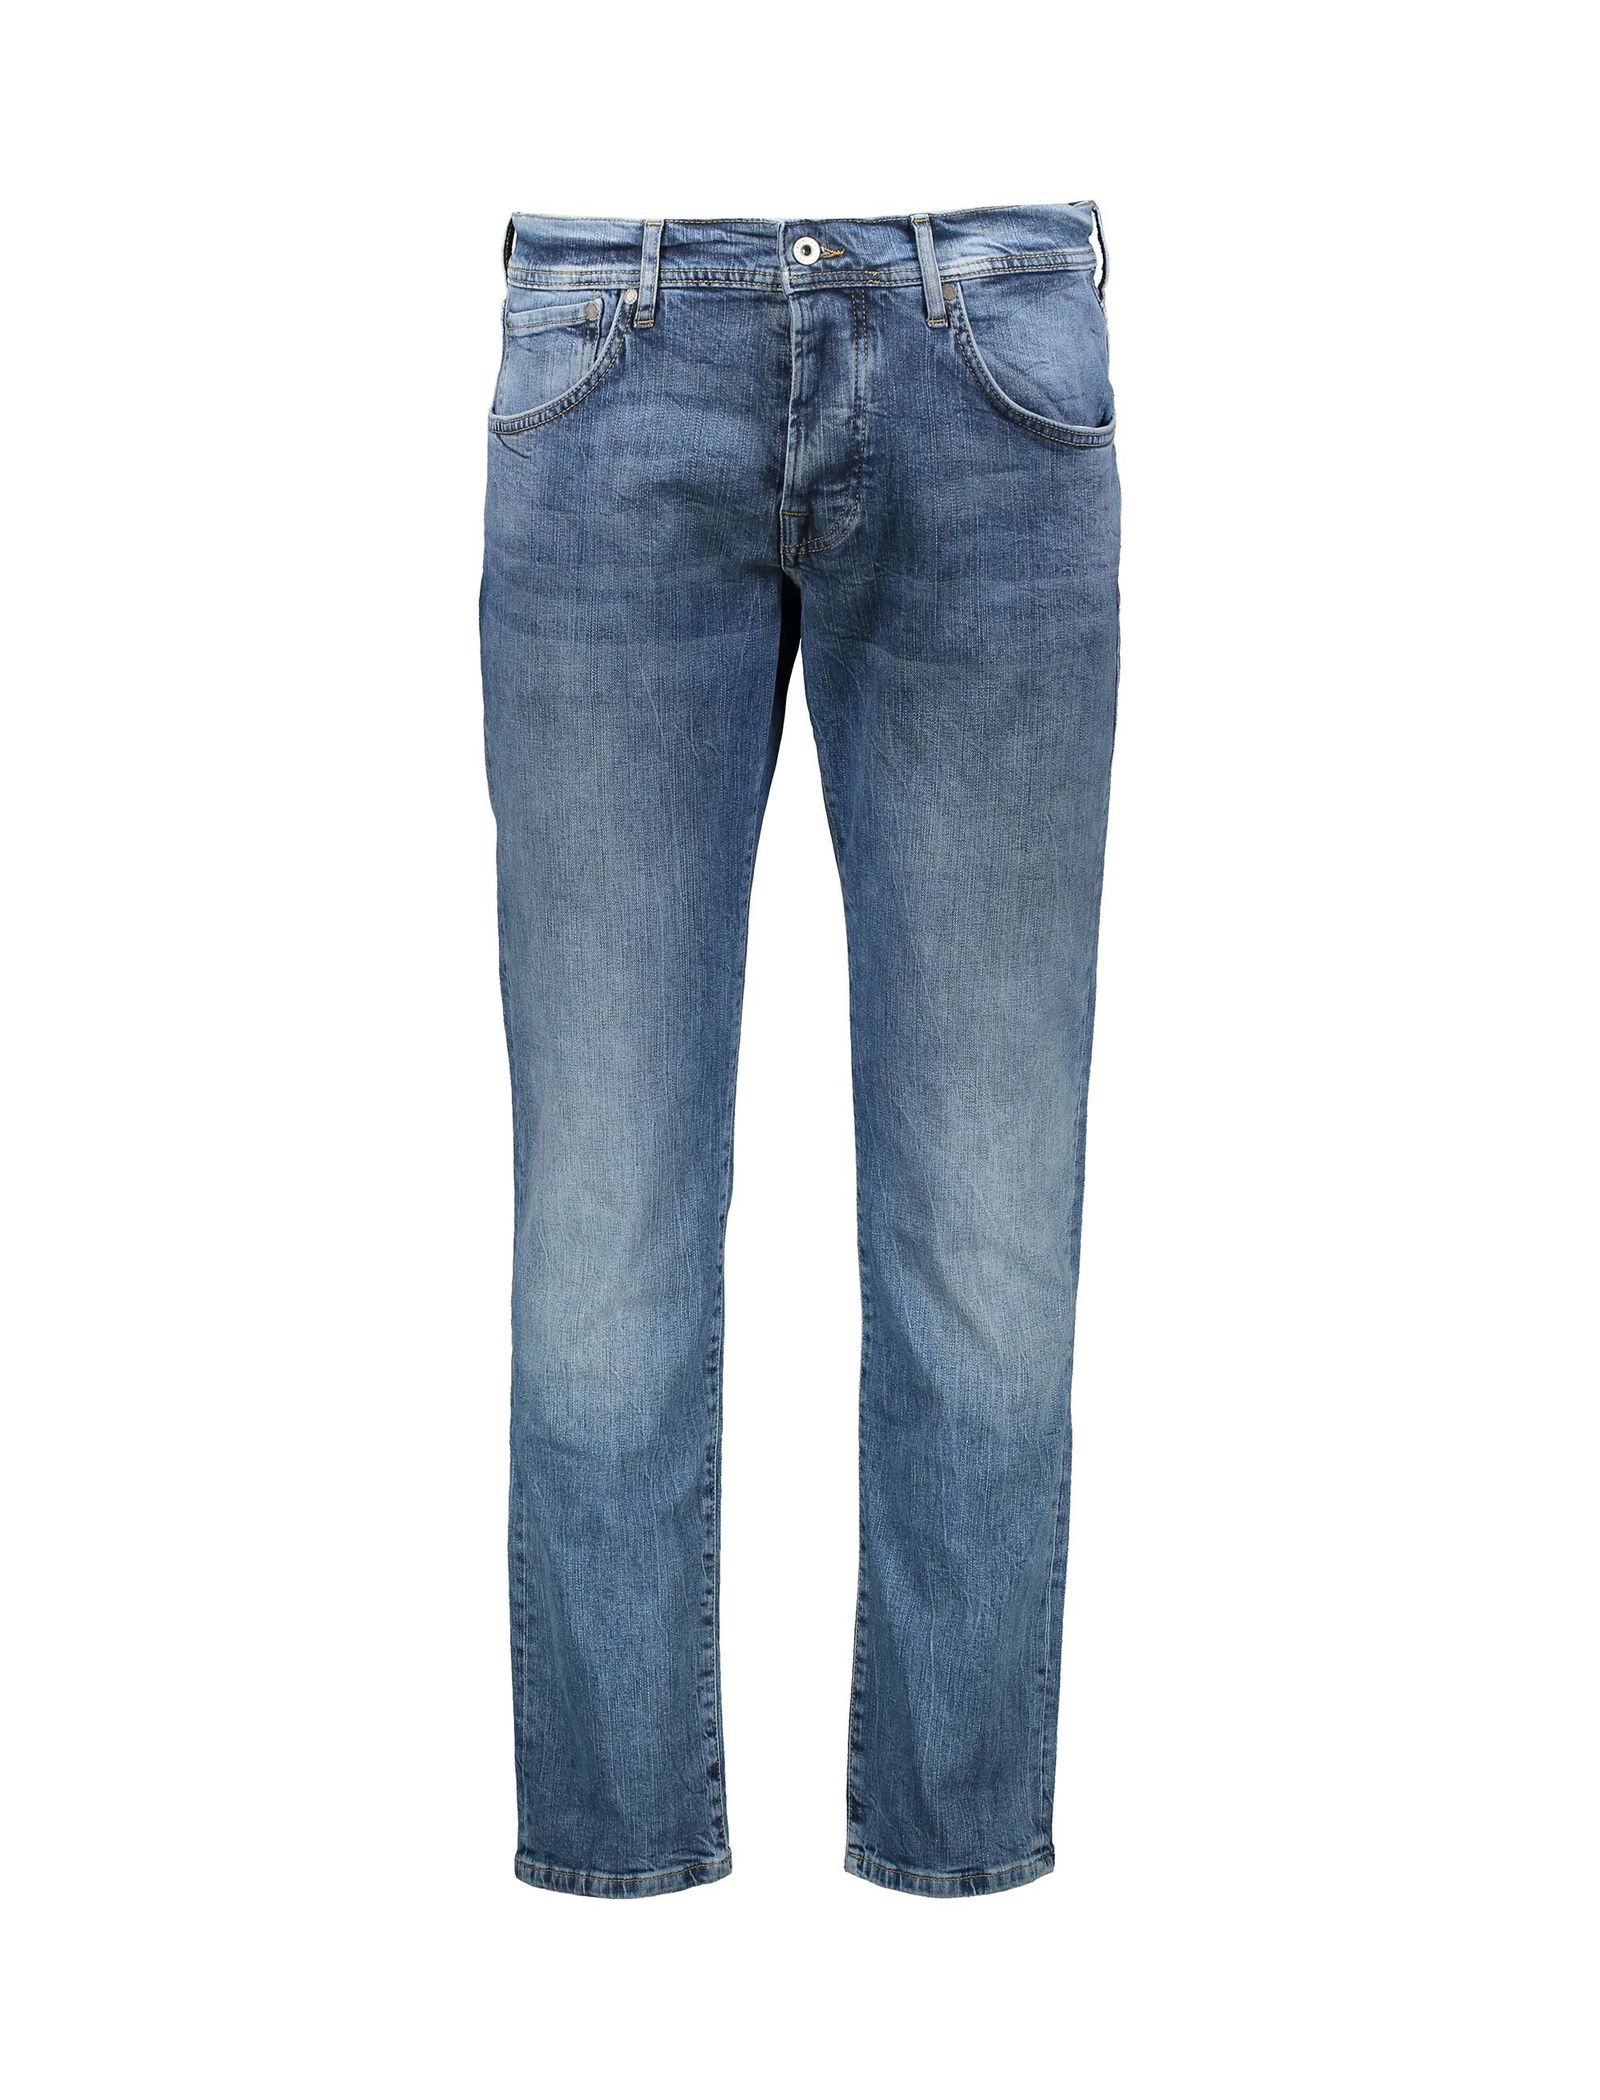 شلوار جین راسته مردانه - پپه جینز - آبي تيره - 1